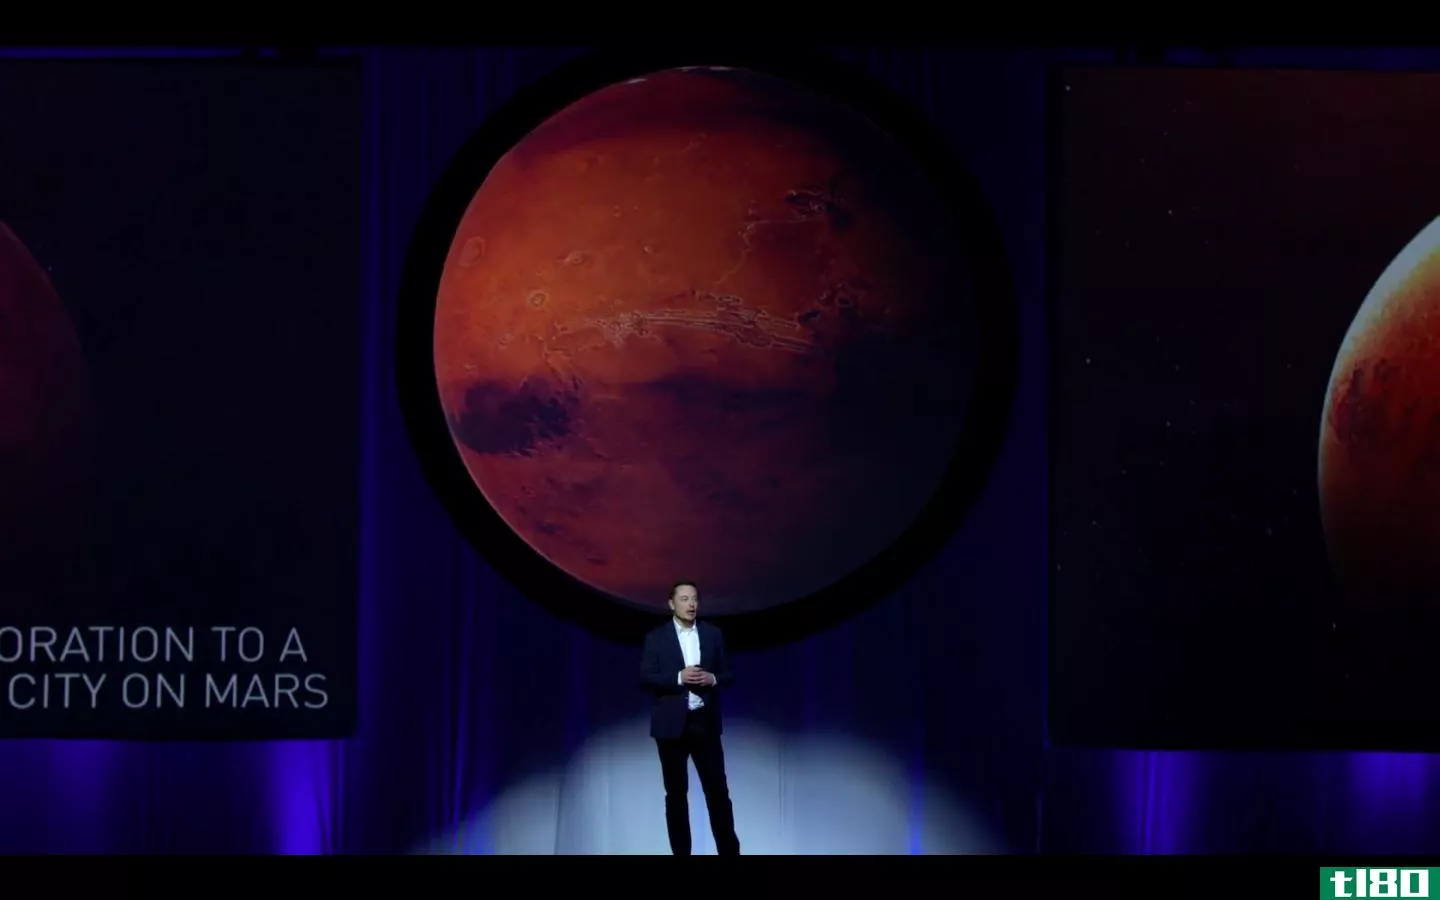 伊隆·马斯克说去火星就像去苹果一样